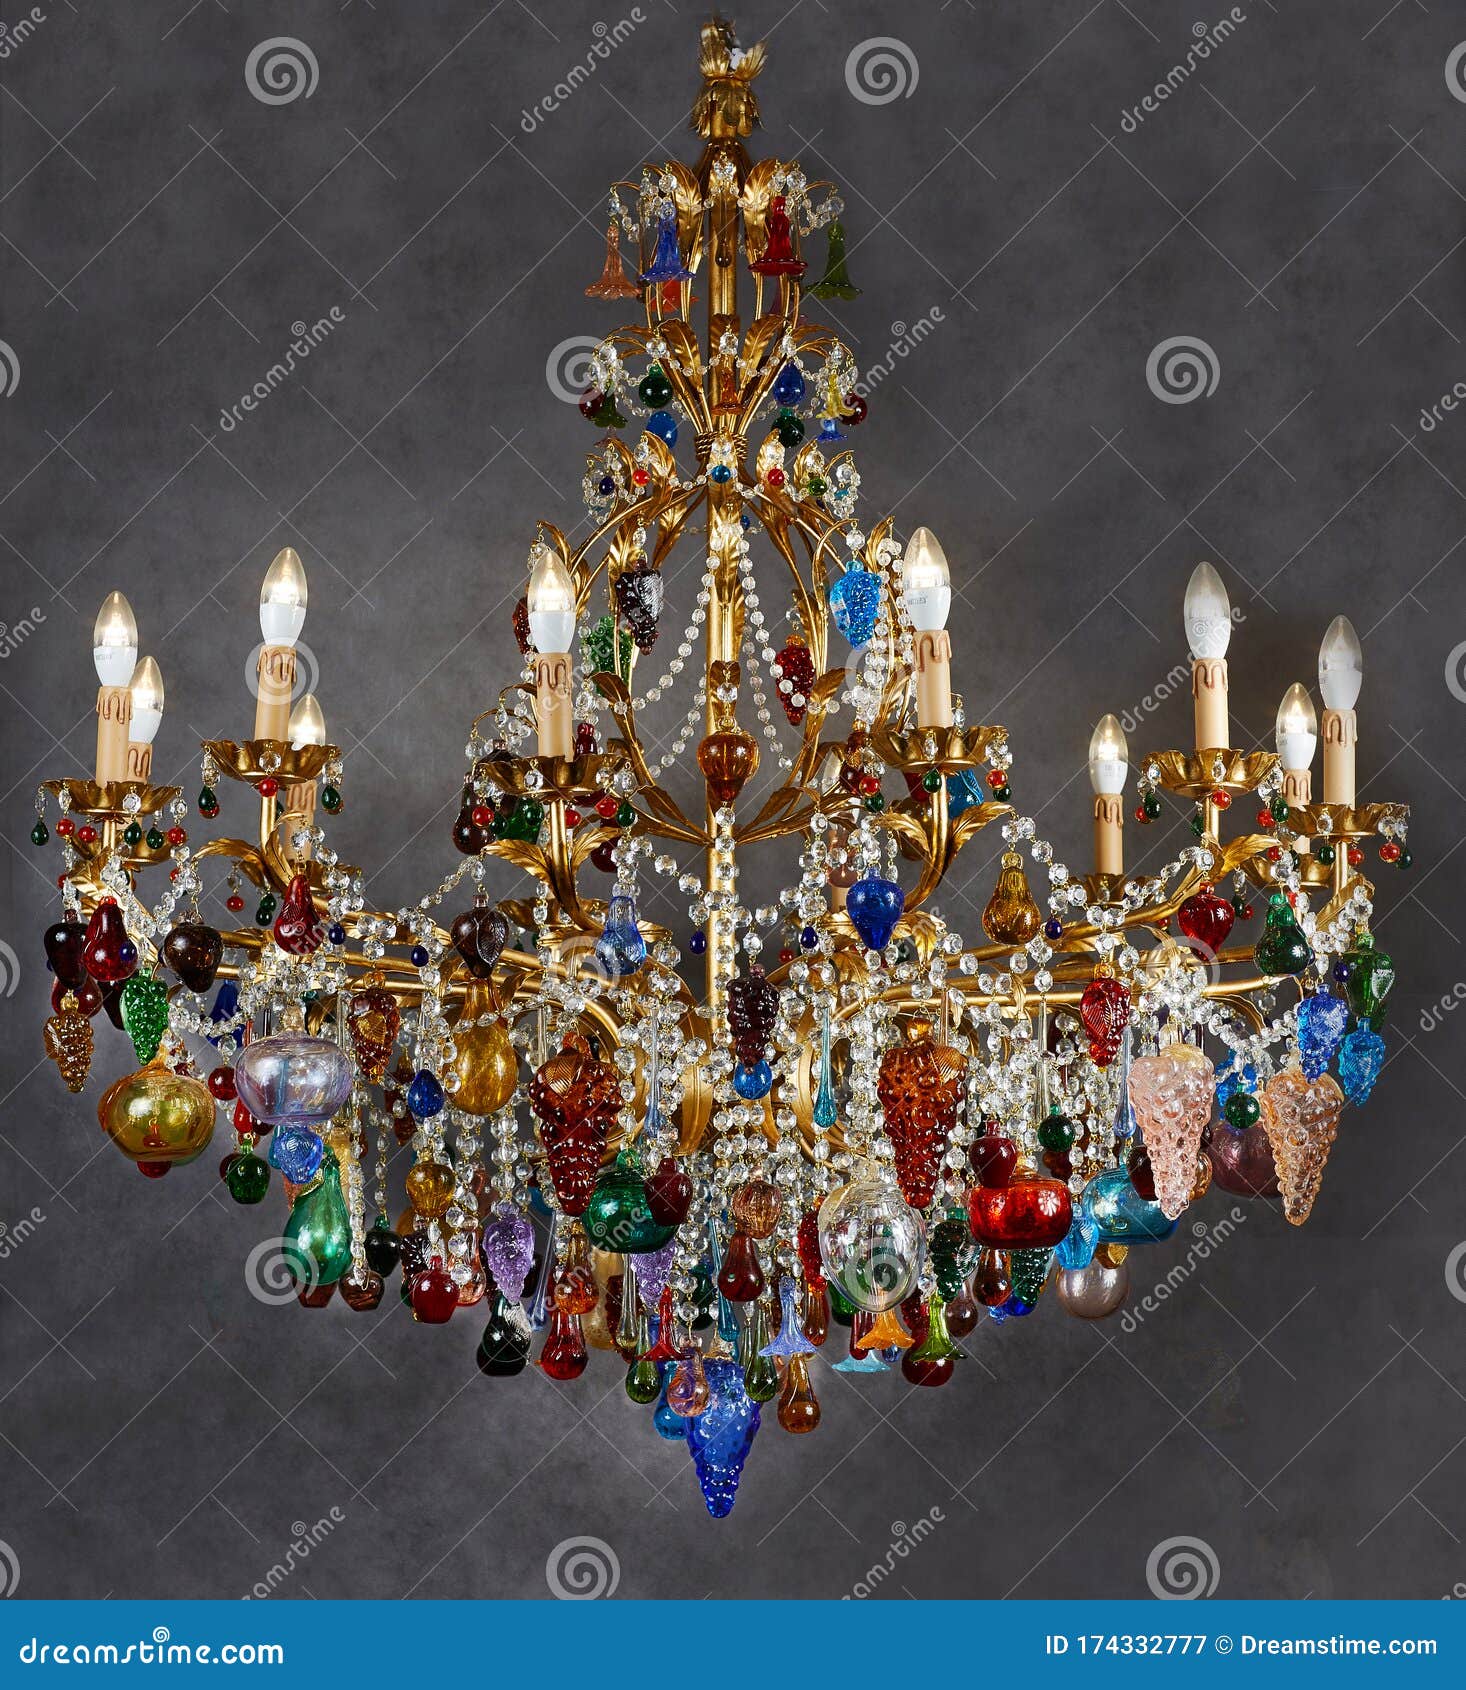 La Lámpara De Araña Es De Color Dorado Con Bombillas Forma De Vela. Colgantes De Cristal Colgantes De Vidrio Color Imagen de archivo - Imagen de color, candelabro: 174332777